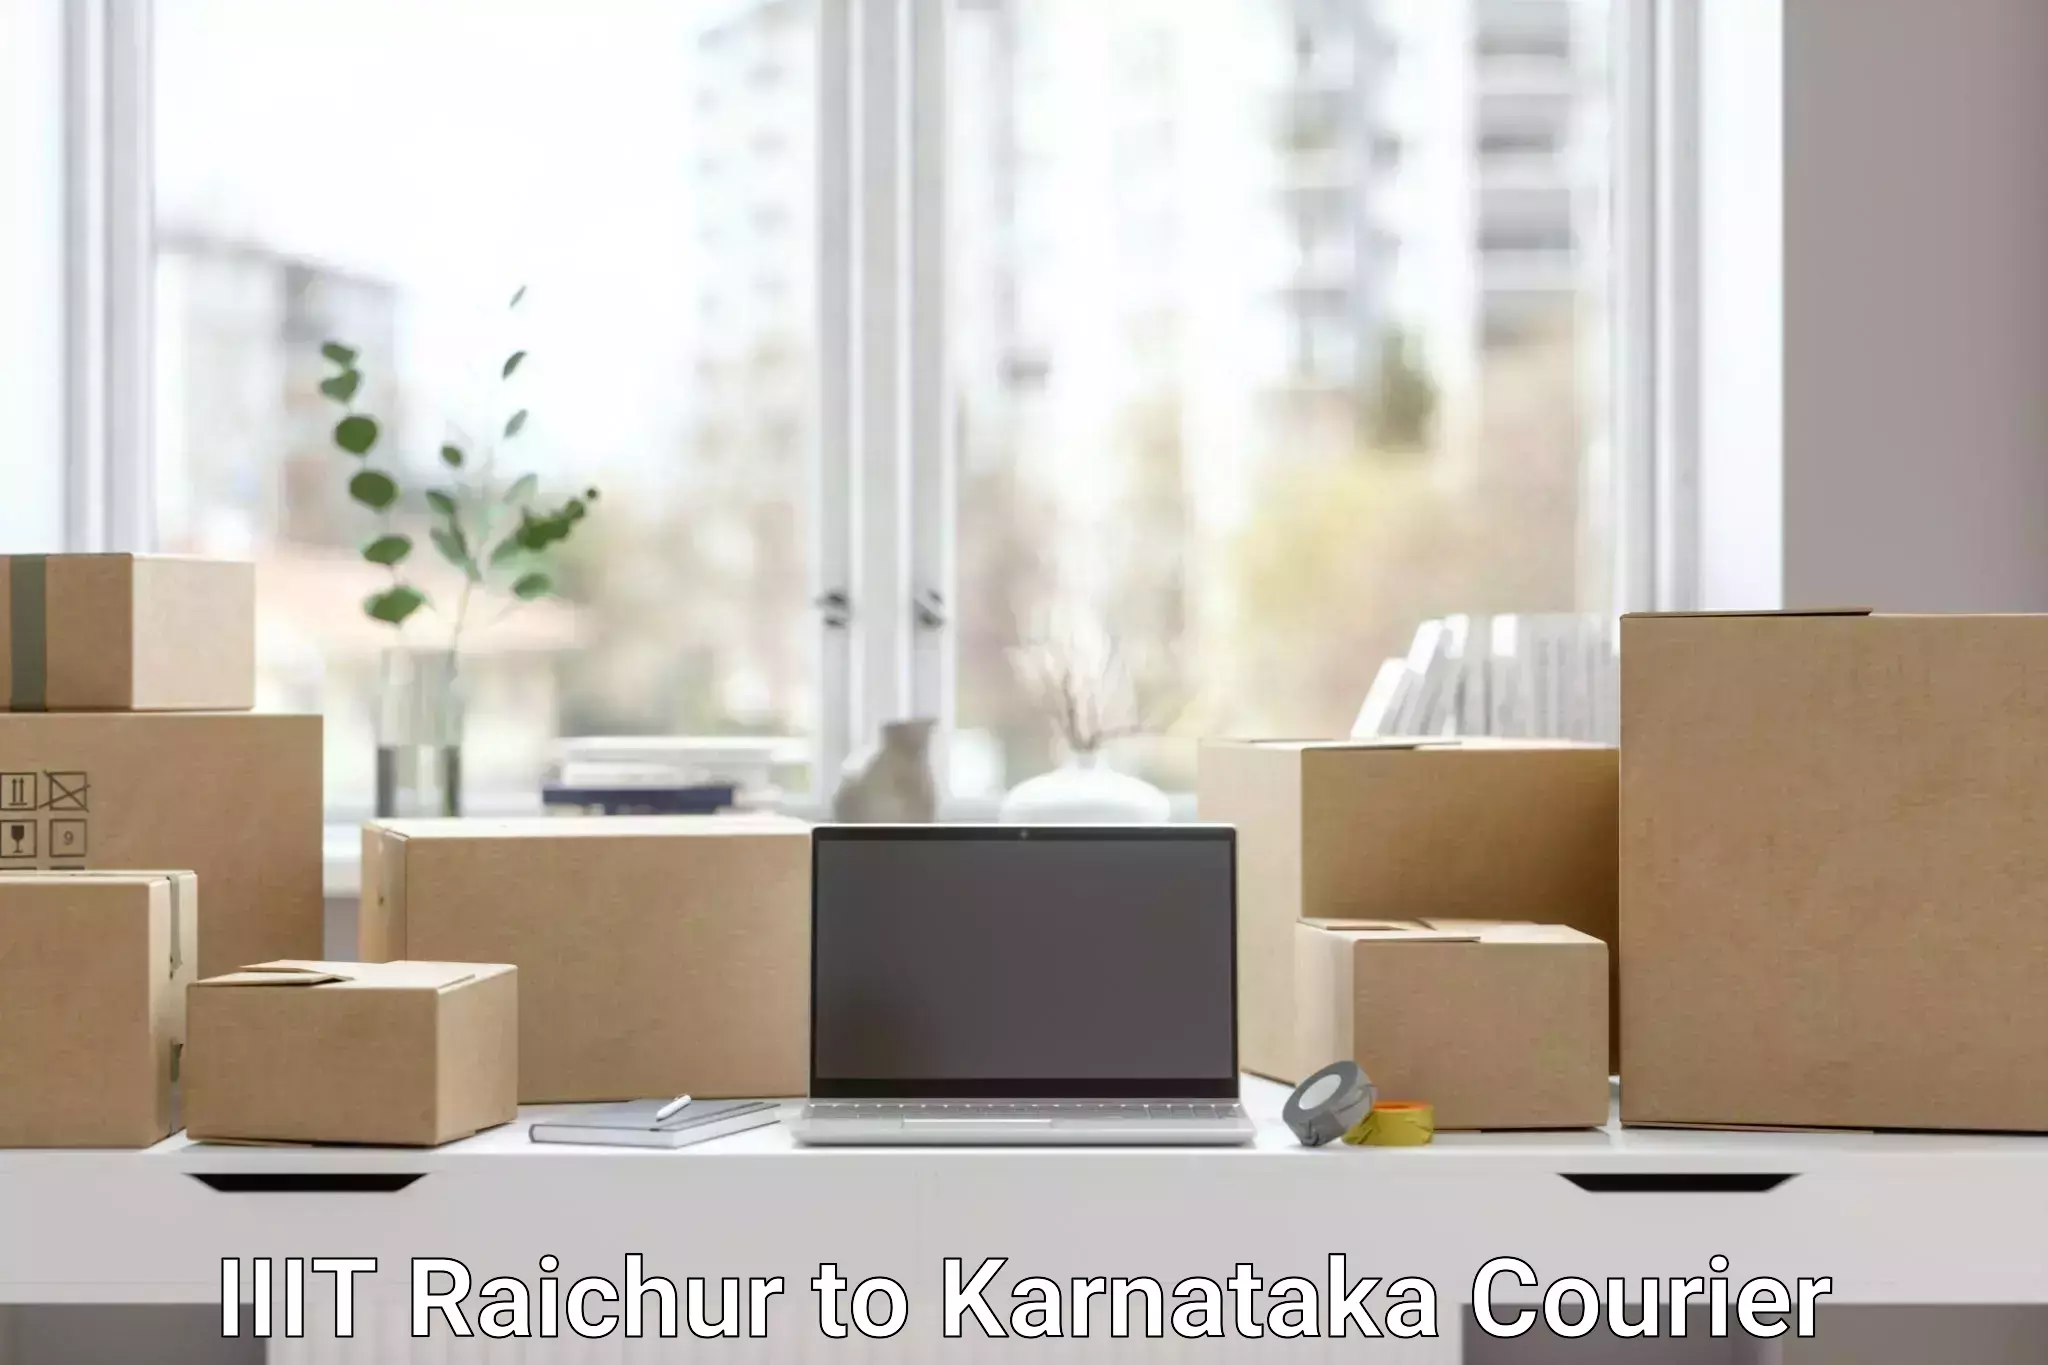 24/7 courier service IIIT Raichur to Puttur